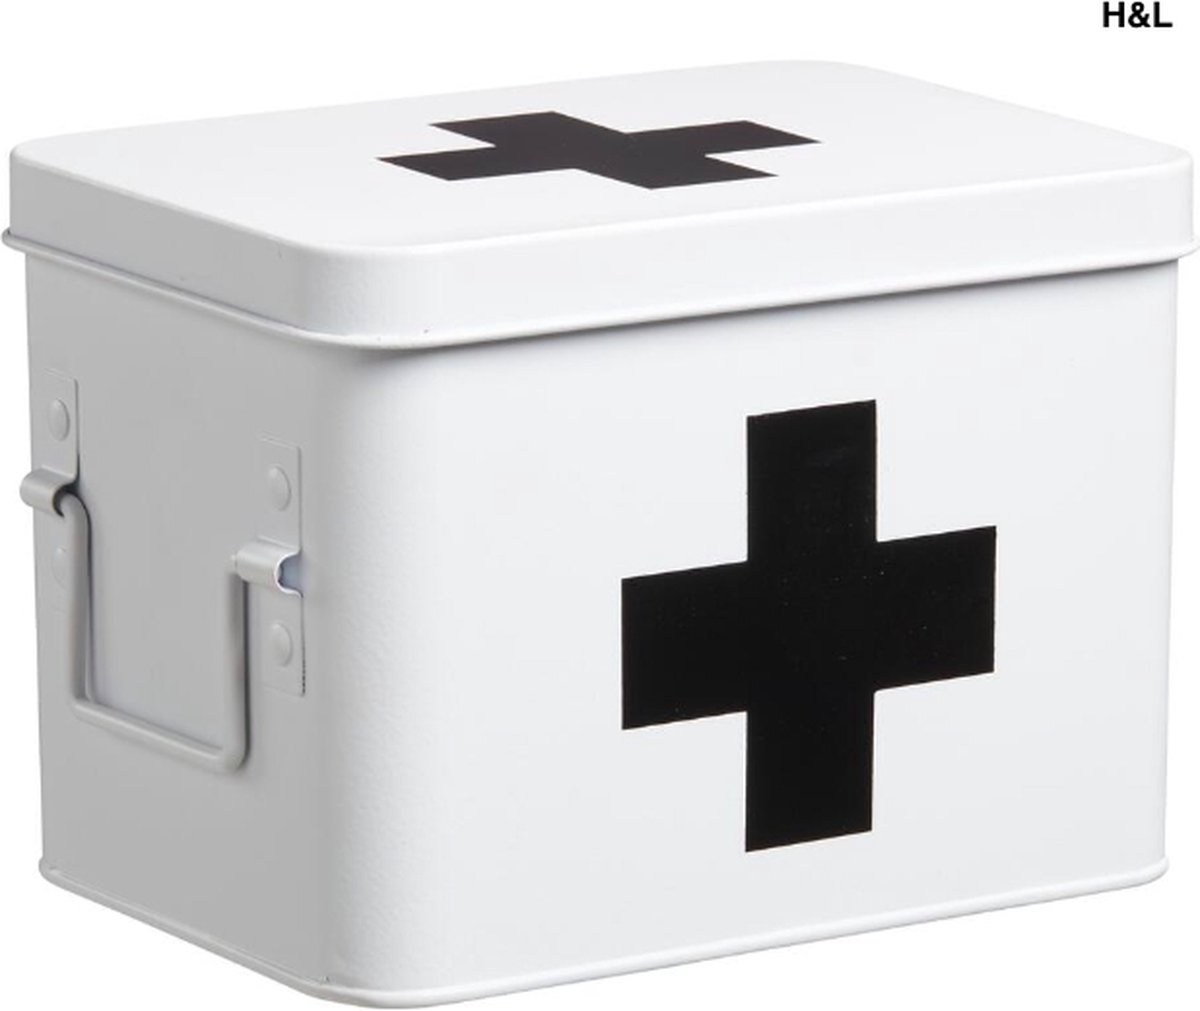 Luxe medicijnbox - wit - metaal - opbergbox medicijnen - badkamer - 15 x 21 x 15 cm